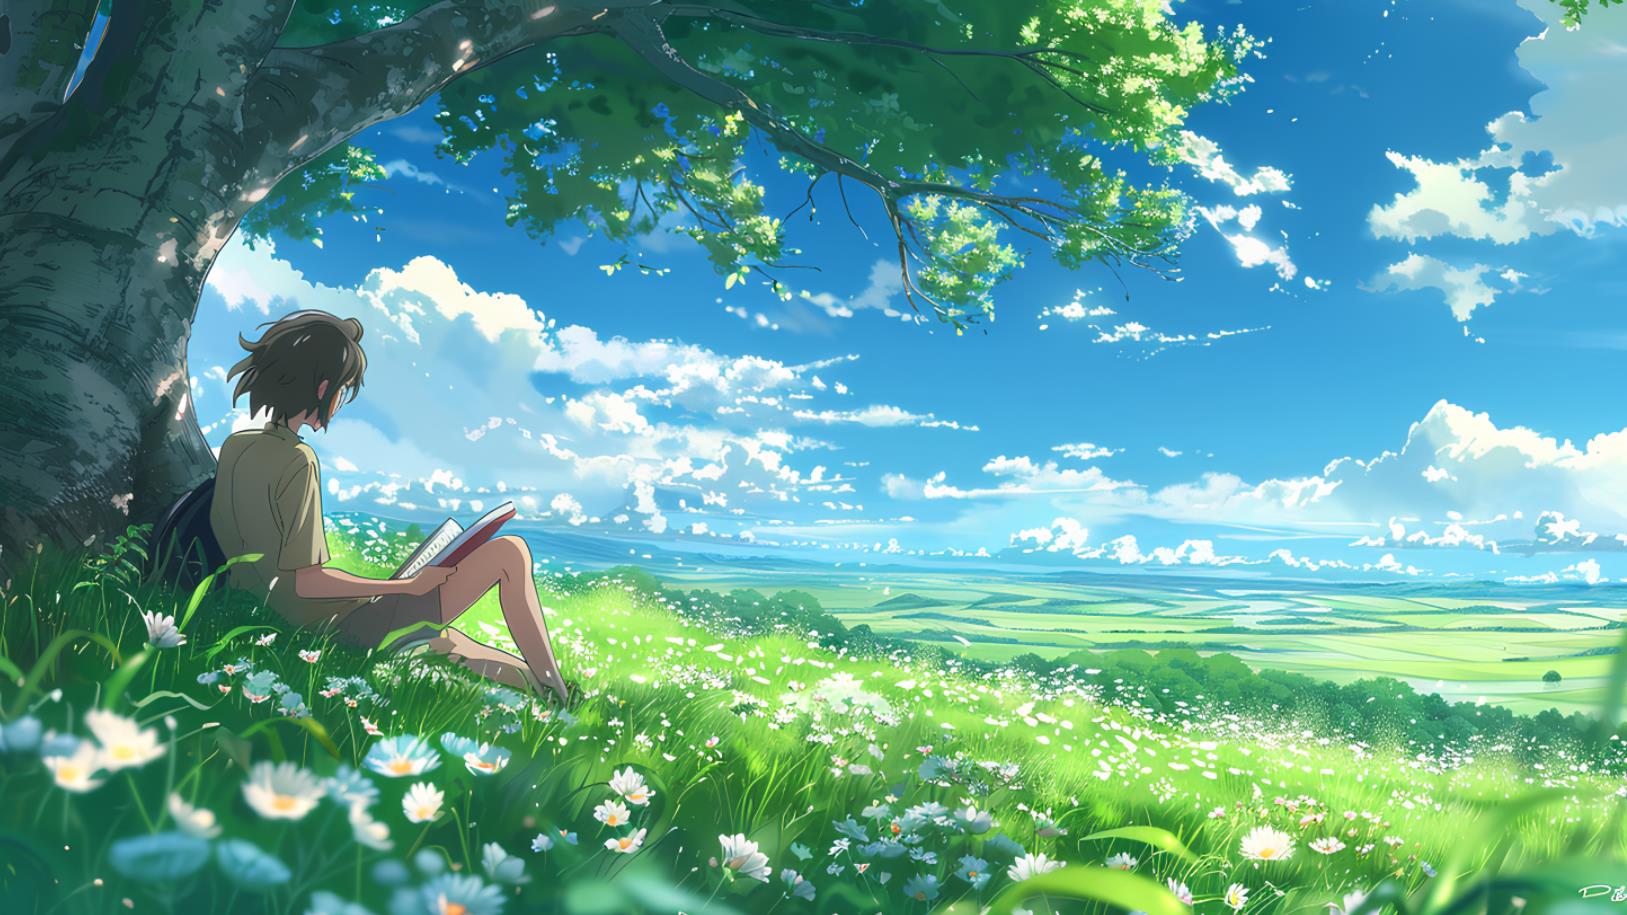 一个男孩坐在树下看书，四周绿草如茵，天空湛蓝，两边开着白花